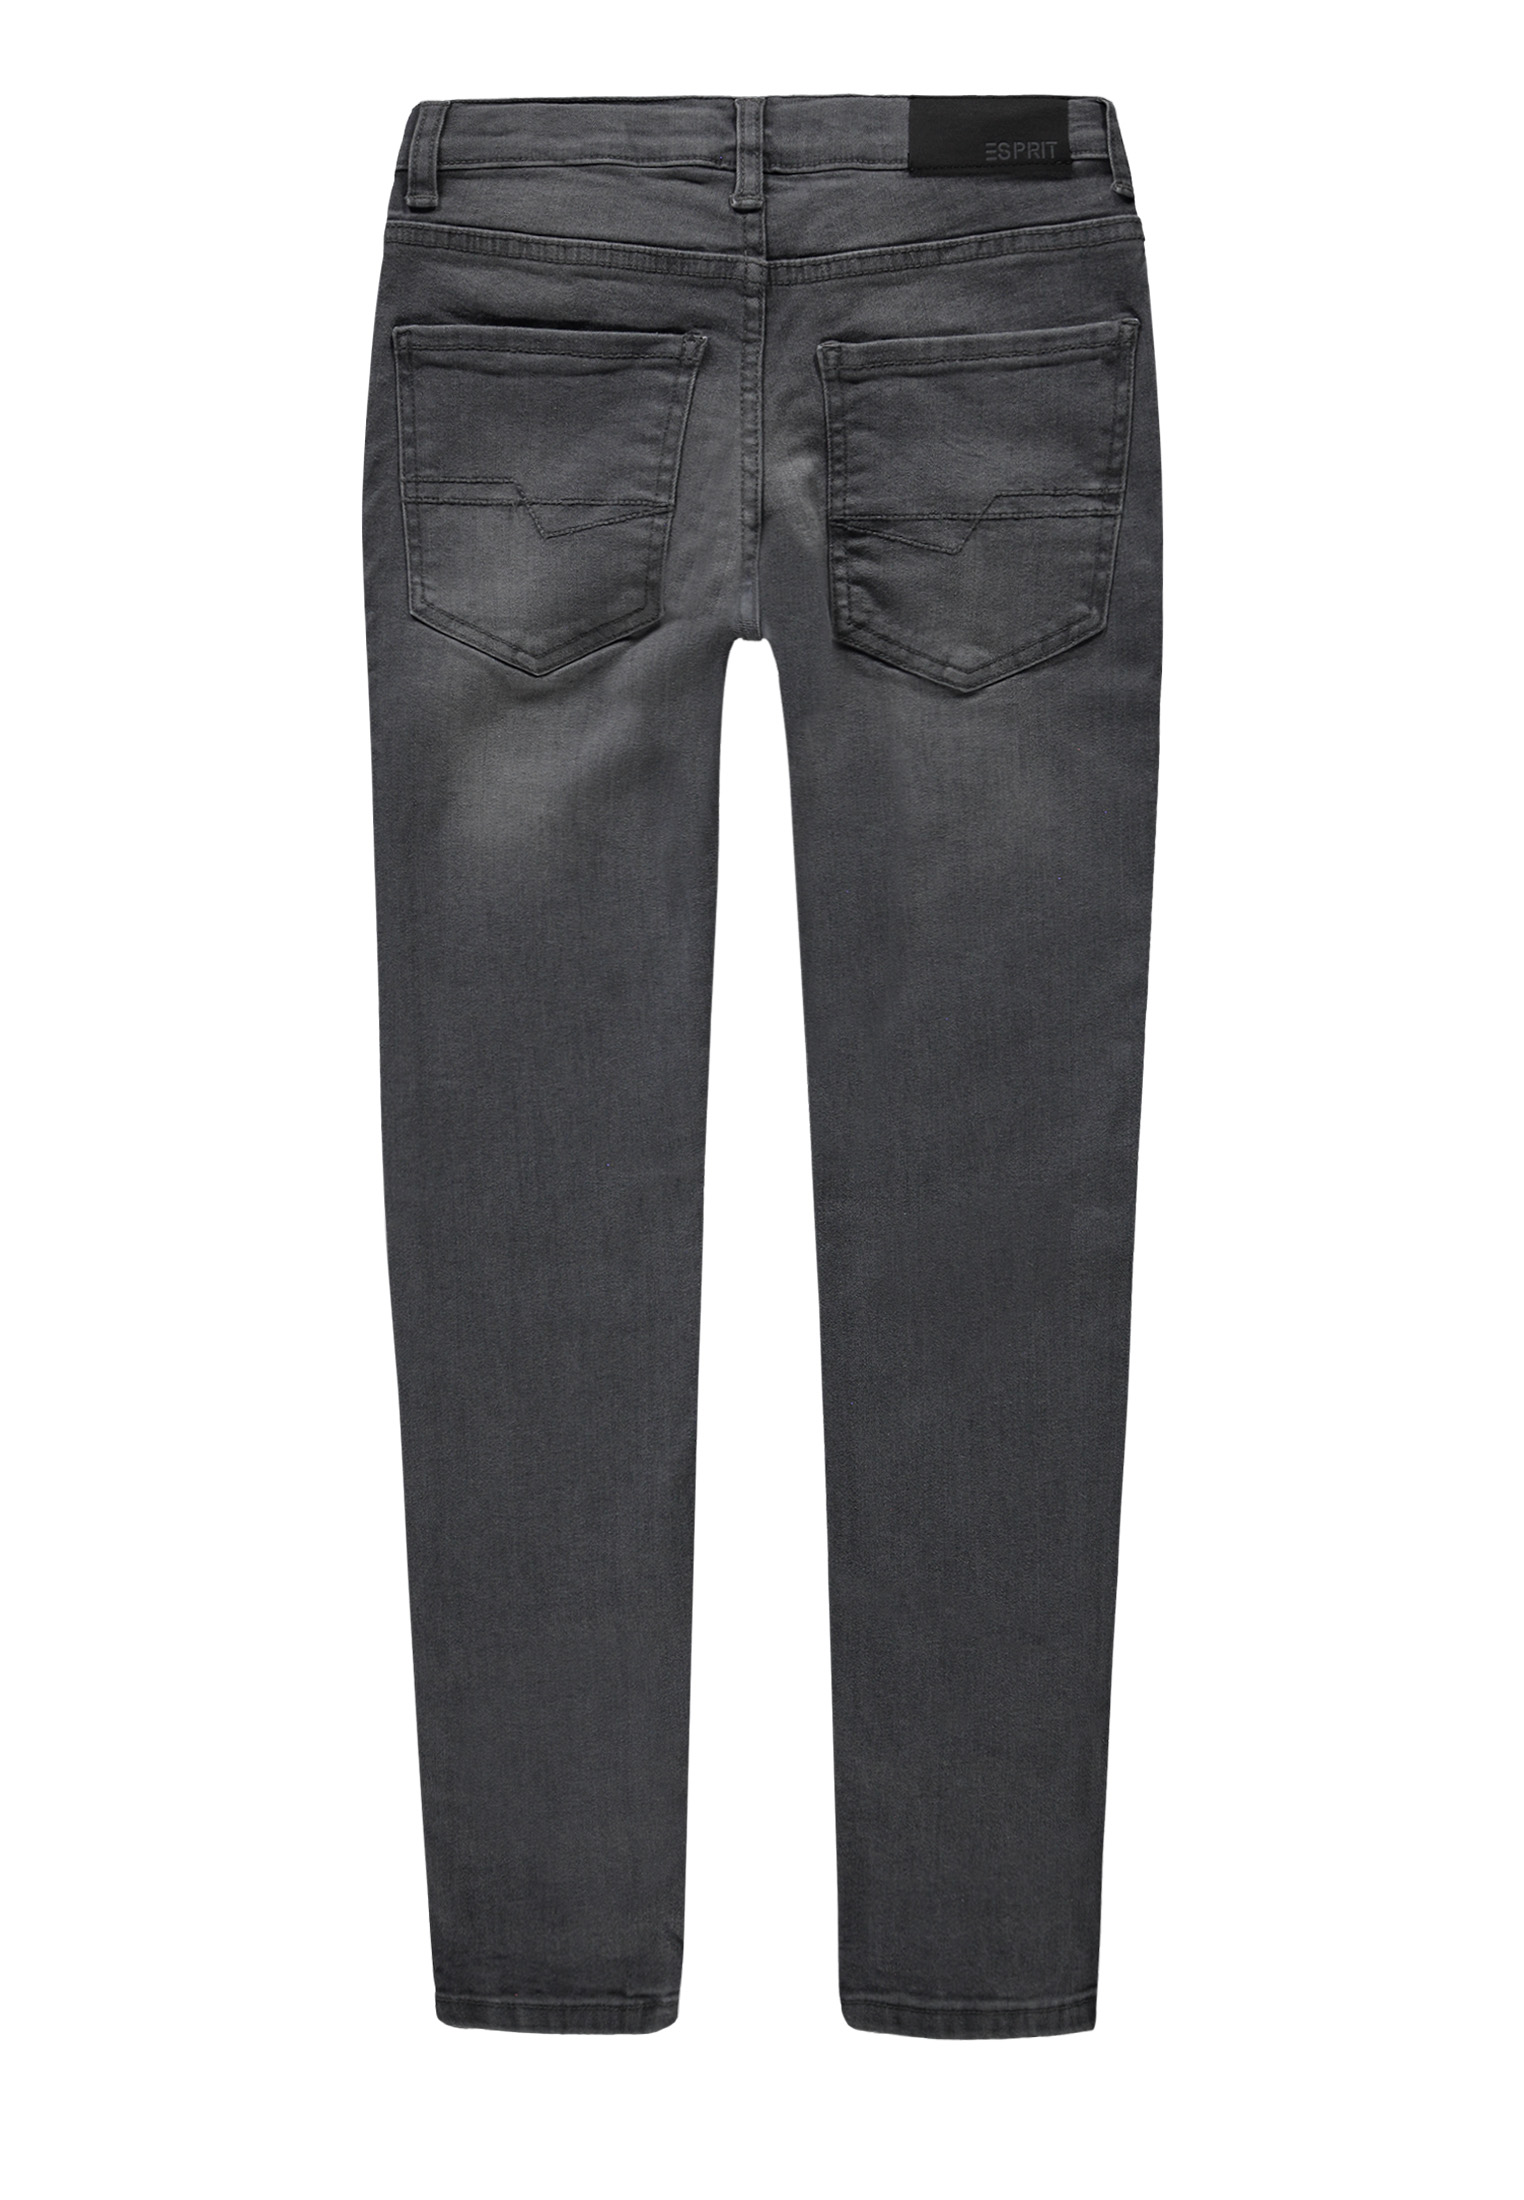 Spodnie jeansowe dla chłopca, Regular Fit, szare, Esprit